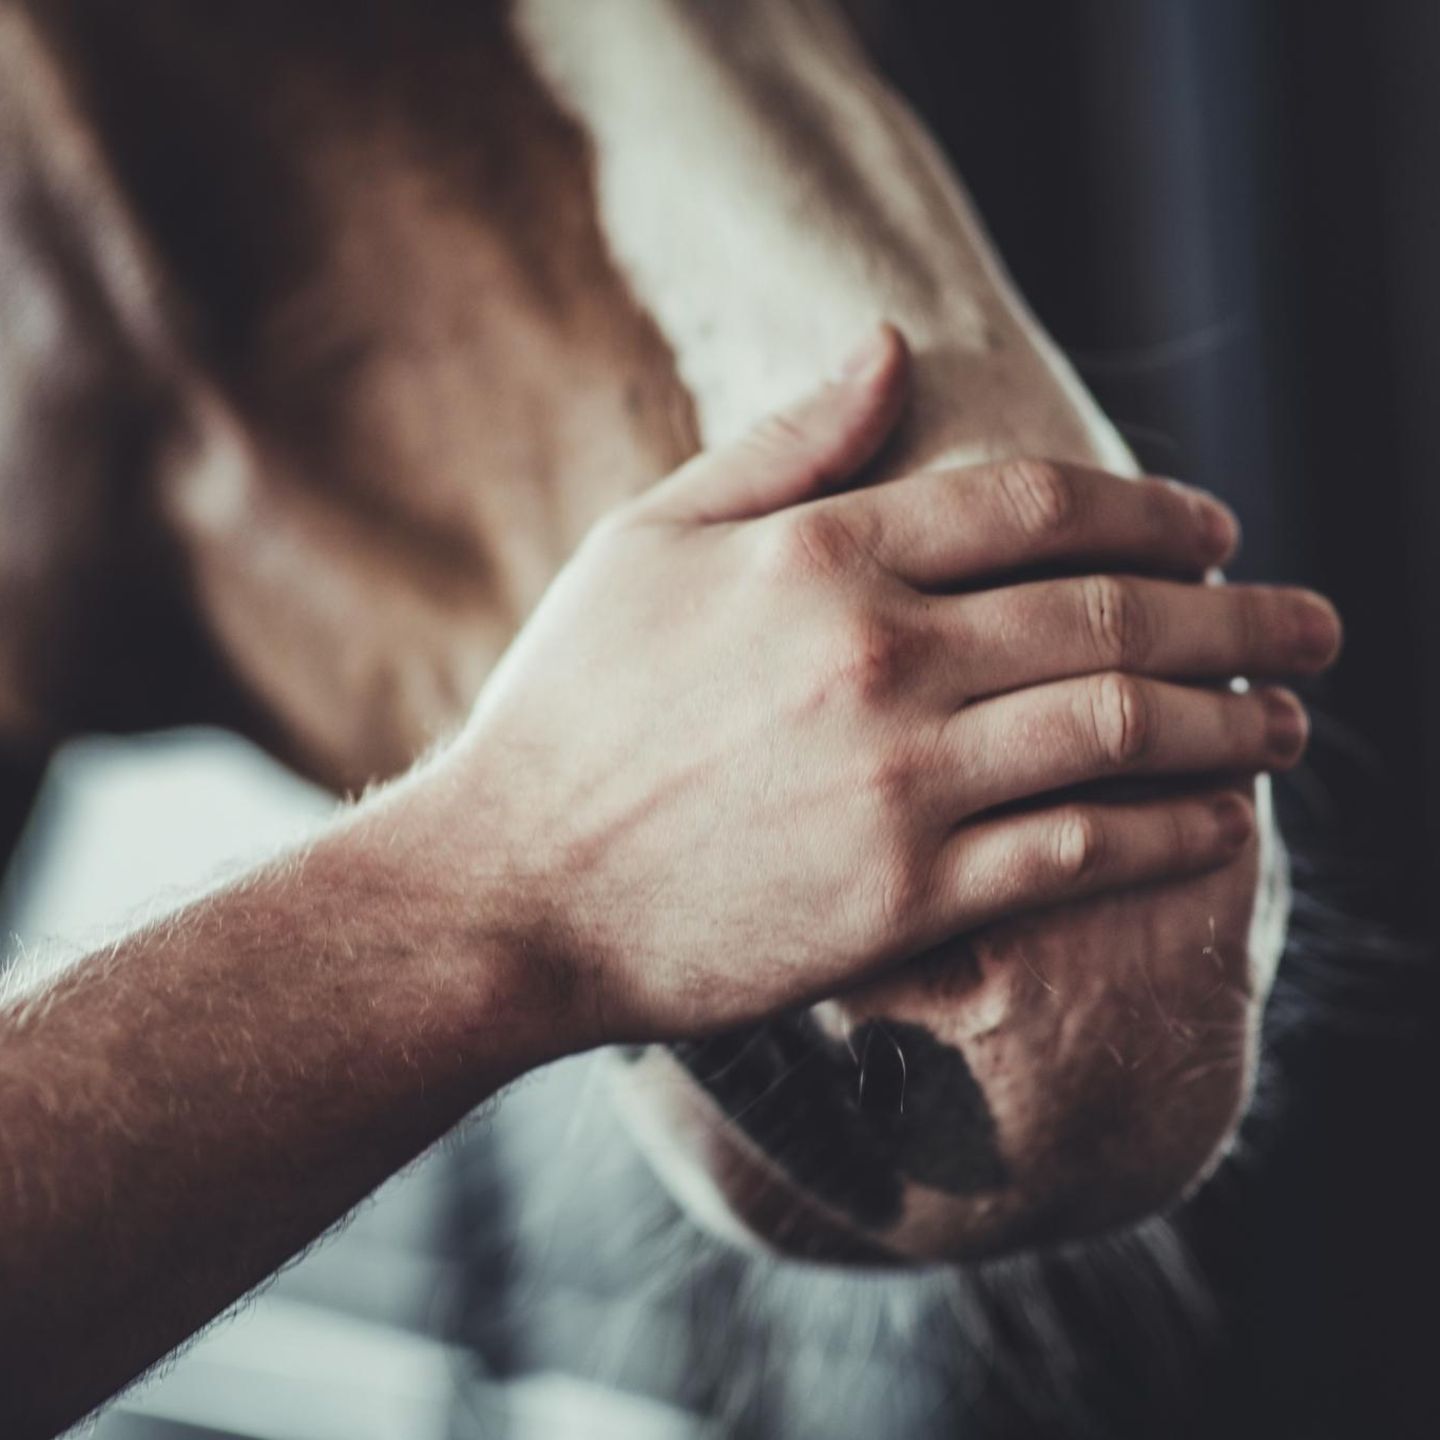 Tiere: Heiß geliebt und ausgenutzt: Warum Pferd und Mensch ziemlich schlechte Freunde sind